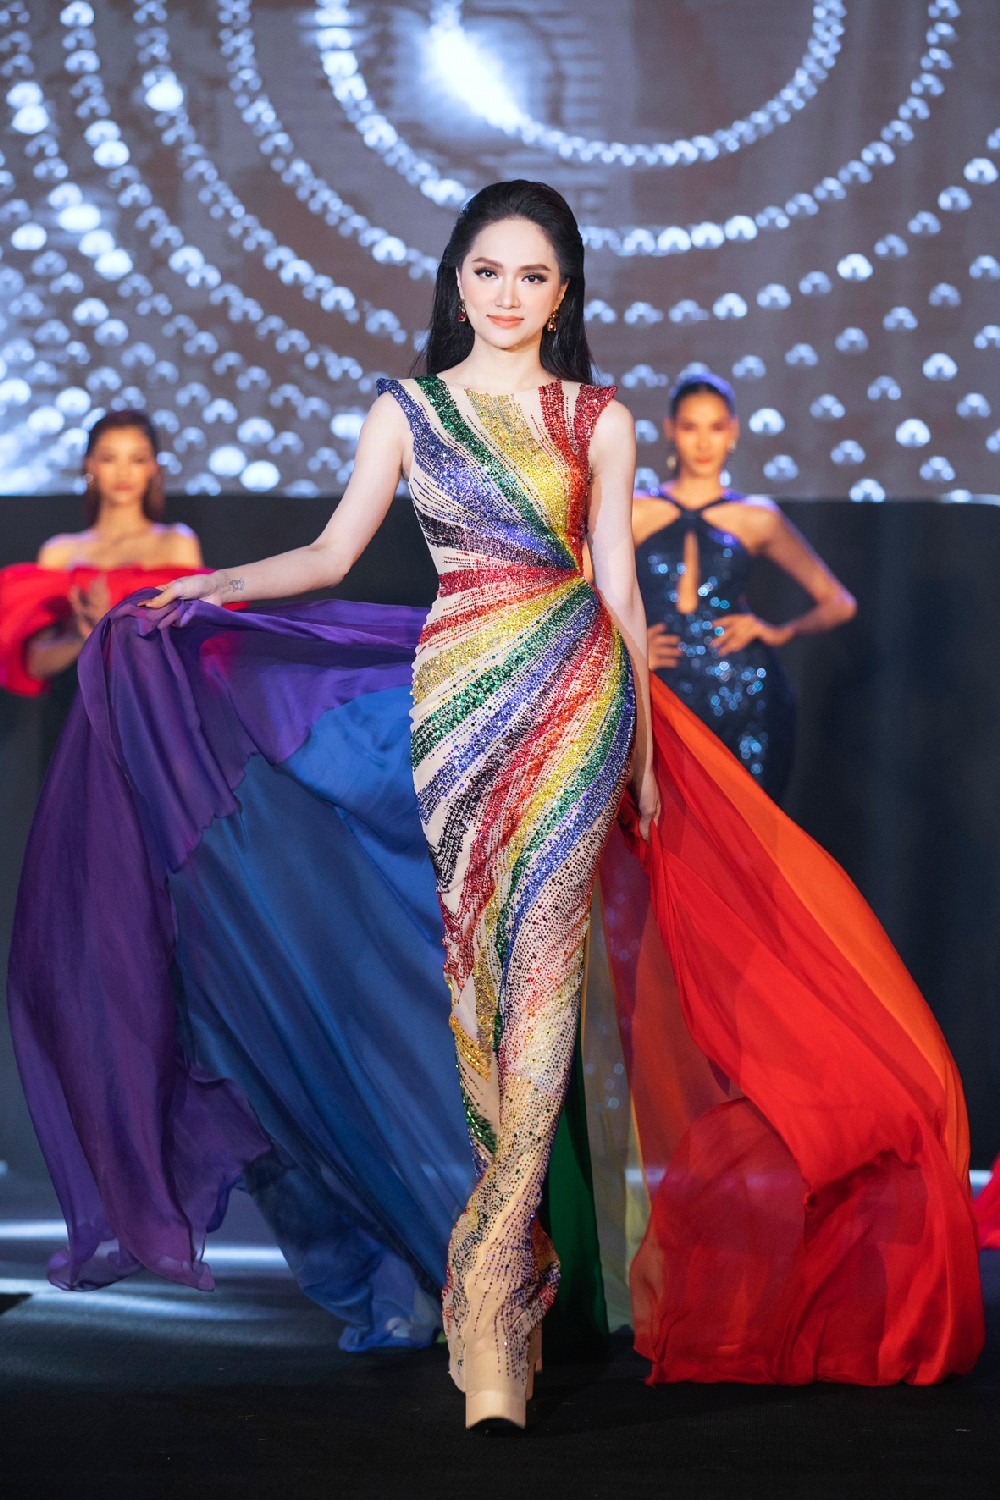 NTK Linh San: Khám phá thế giới thời trang của NTK Linh San,  một trong những thiết kế quần áo hàng đầu tại Việt Nam. Các thiết kế và sáng tạo của Linh San được xây dựng trên nền tảng của sự tôn trọng và bảo vệ môi trường. Hãy để hình ảnh của Linh San đưa bạn đến với một thế giới mới lạ và đầy màu sắc.